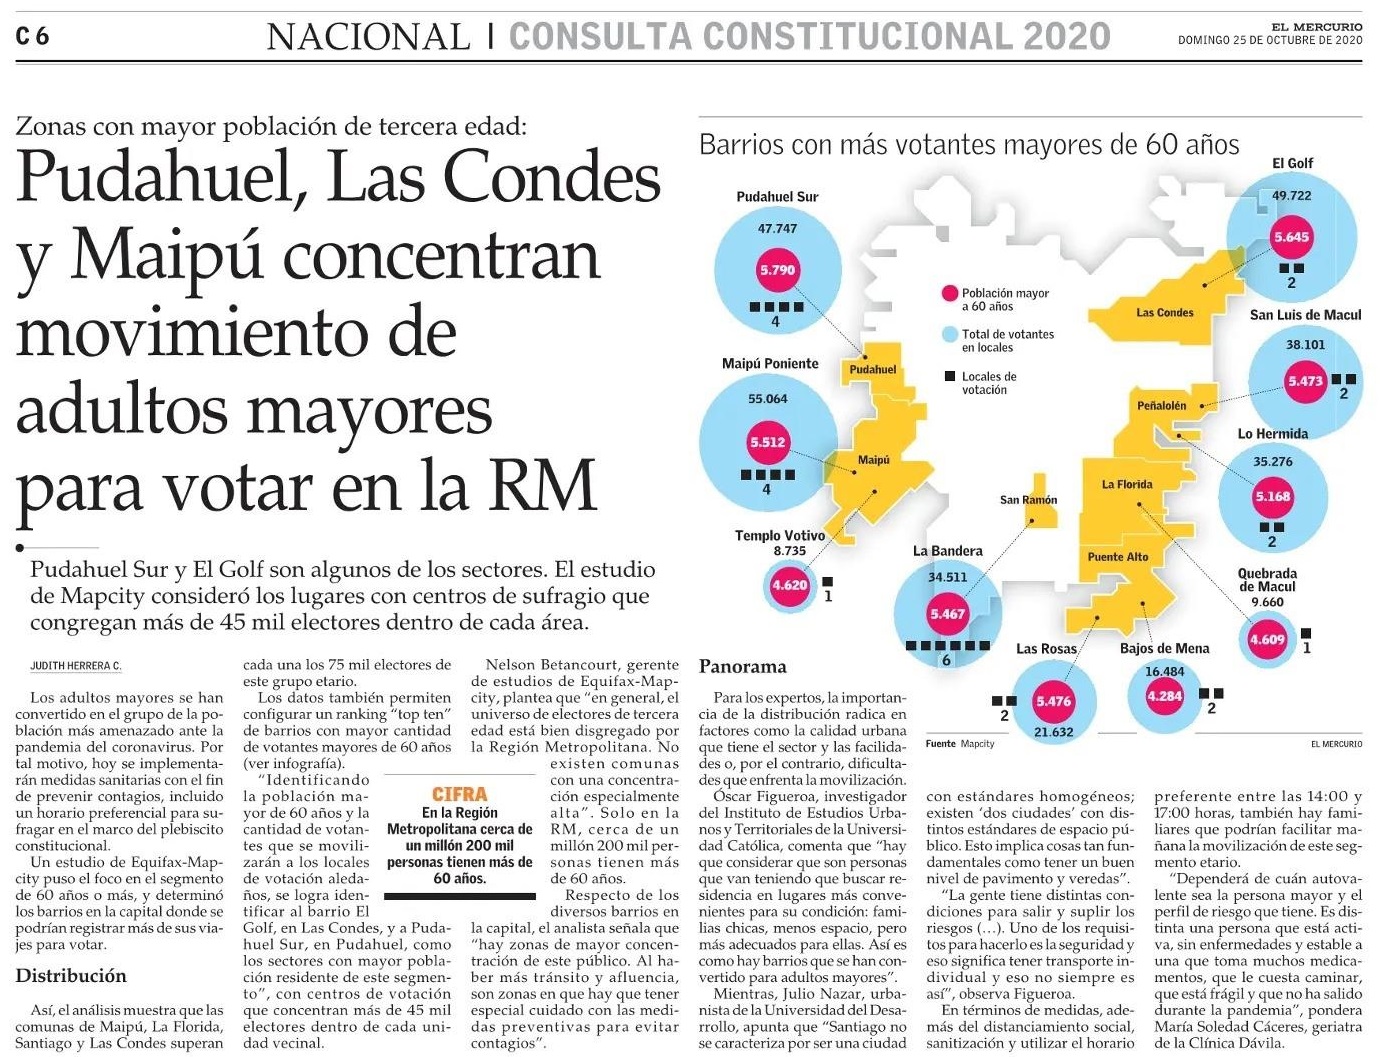 El Mercurio: Pudahuel, Las Condes y Maipú concentran movimiento de adultos mayores para votar en la RM